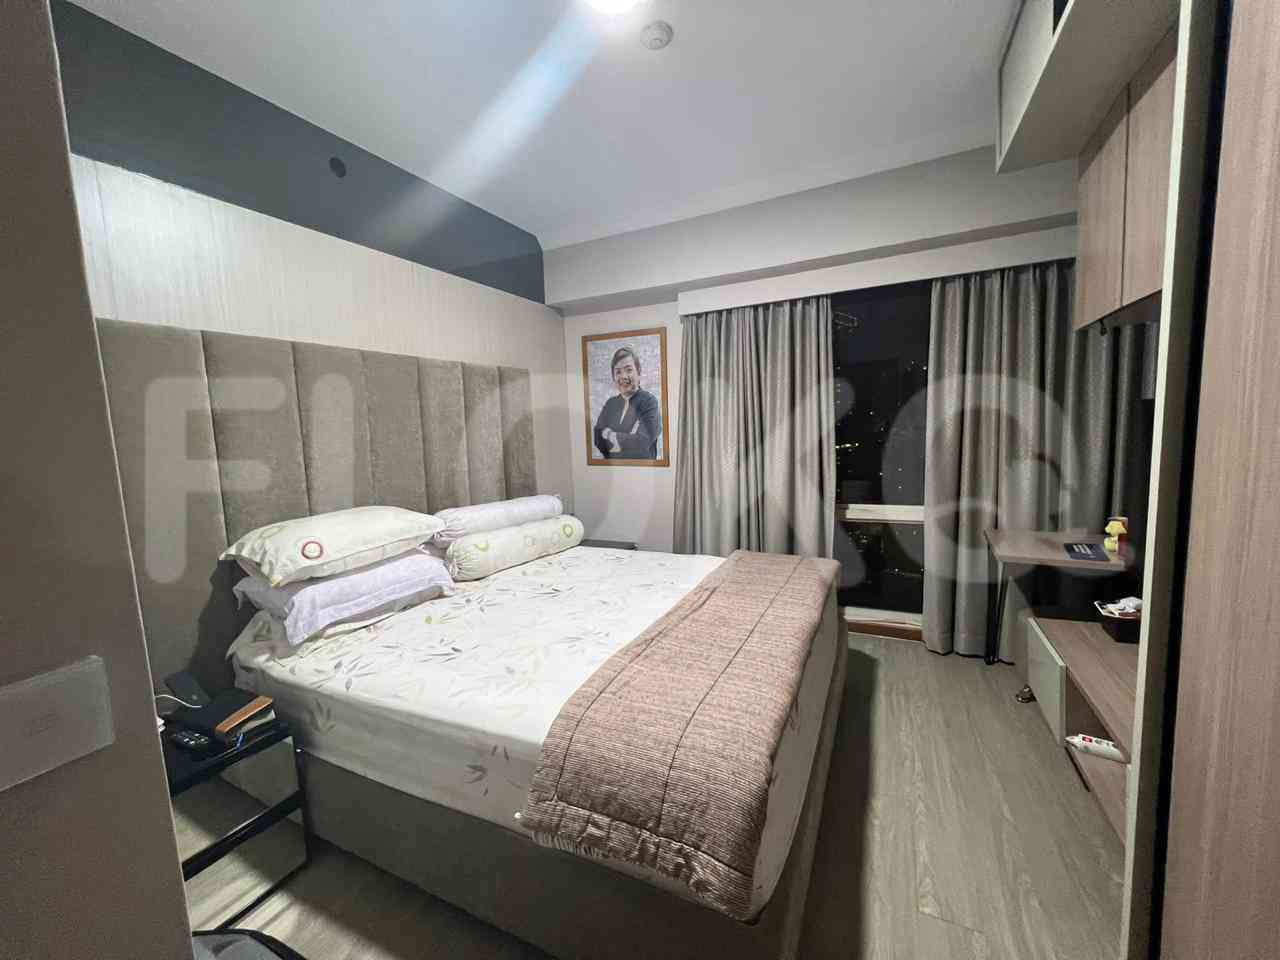 1 Bedroom on 33rd Floor for Rent in Puri Casablanca - fte521 2